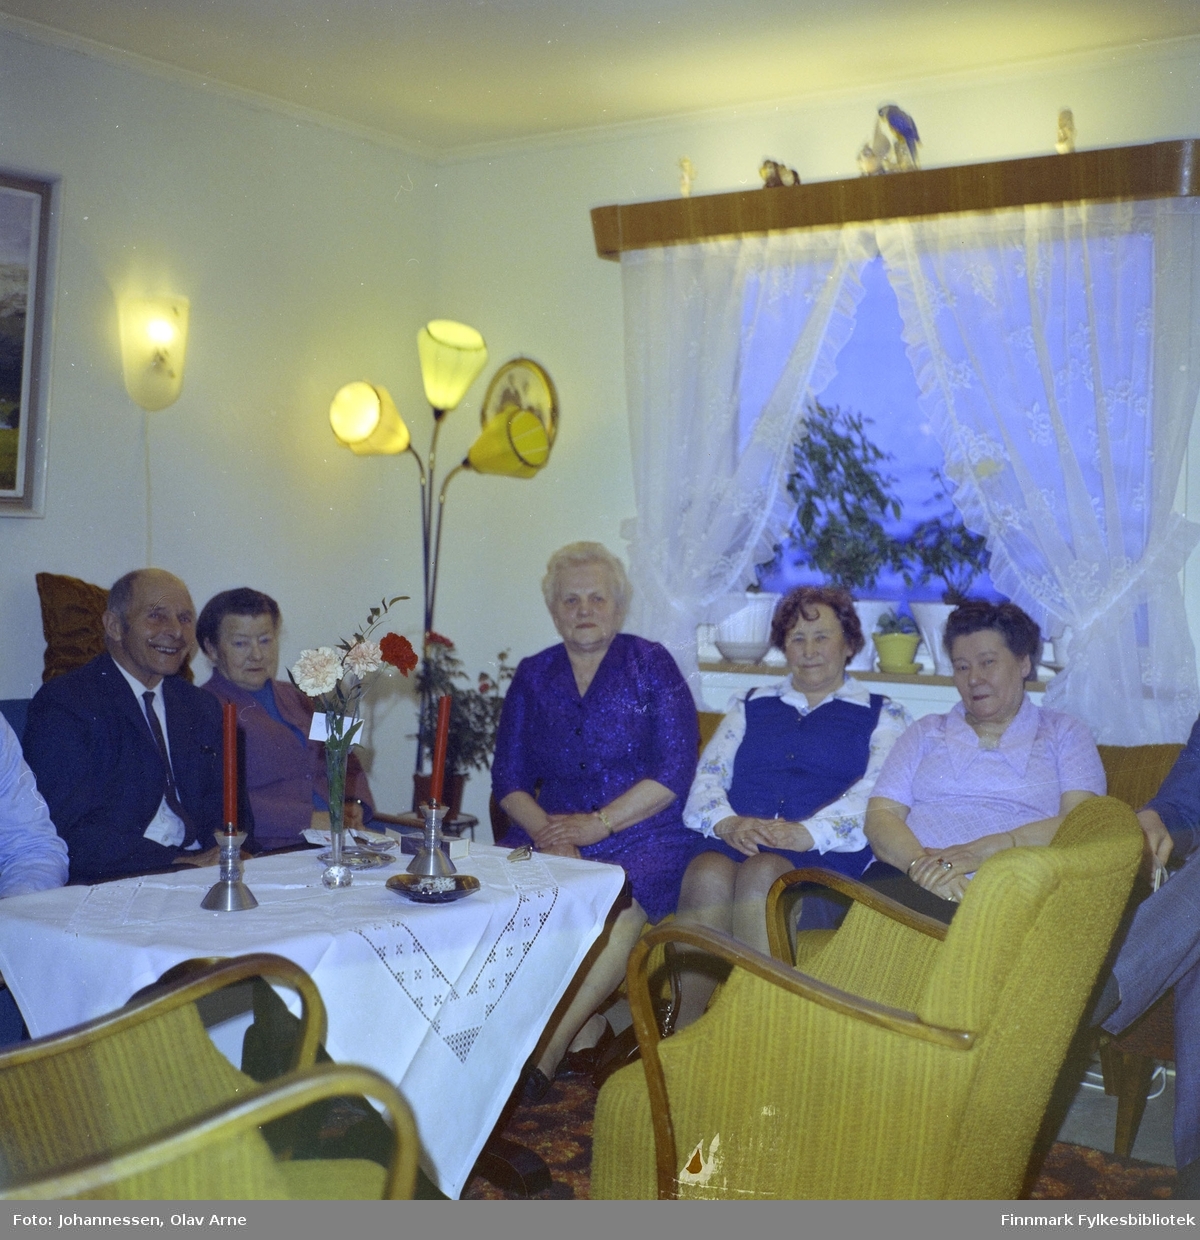 Fra venstre: Gundolf Sivertsen, ukjent kvinne, så Laura Olsborg f. Lauritsen 

Resten er ukjente 

Foto trolig tatt på 1960-tallet